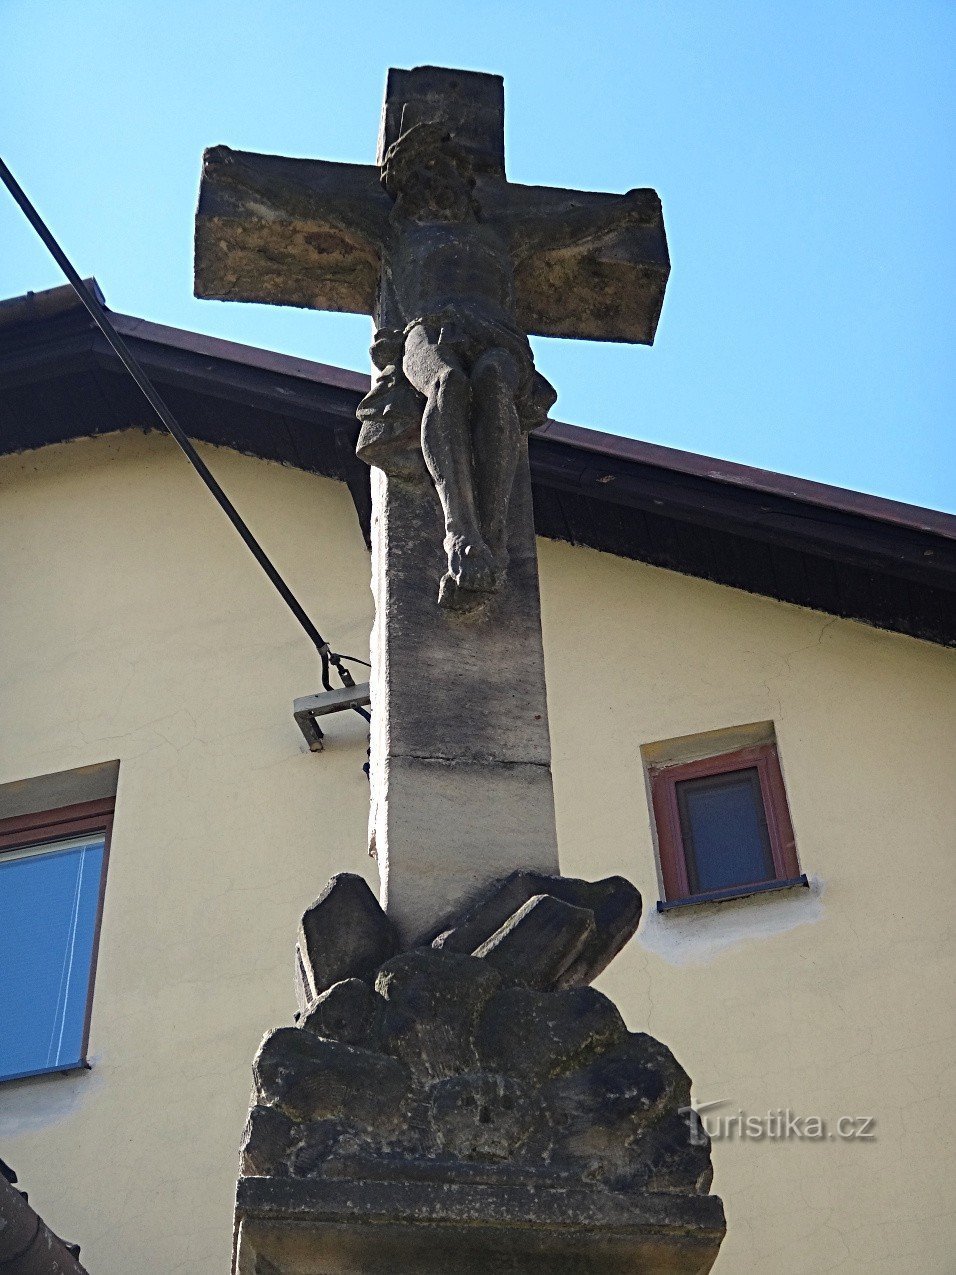 Studenka detal krzyża Fabiána